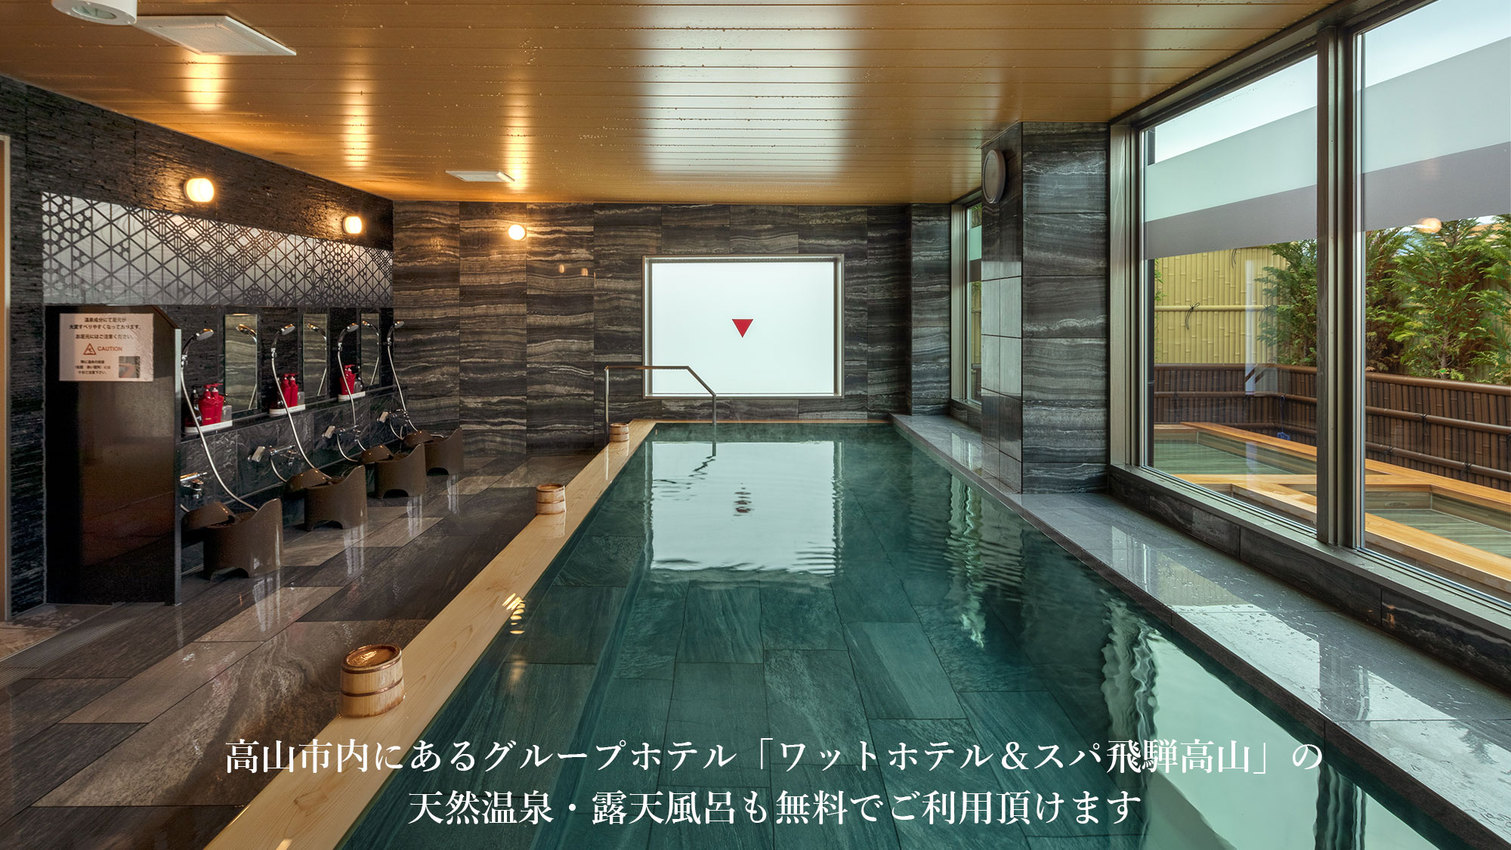 高山市内にあるグループホテルの天然温泉も無料でご利用頂けます